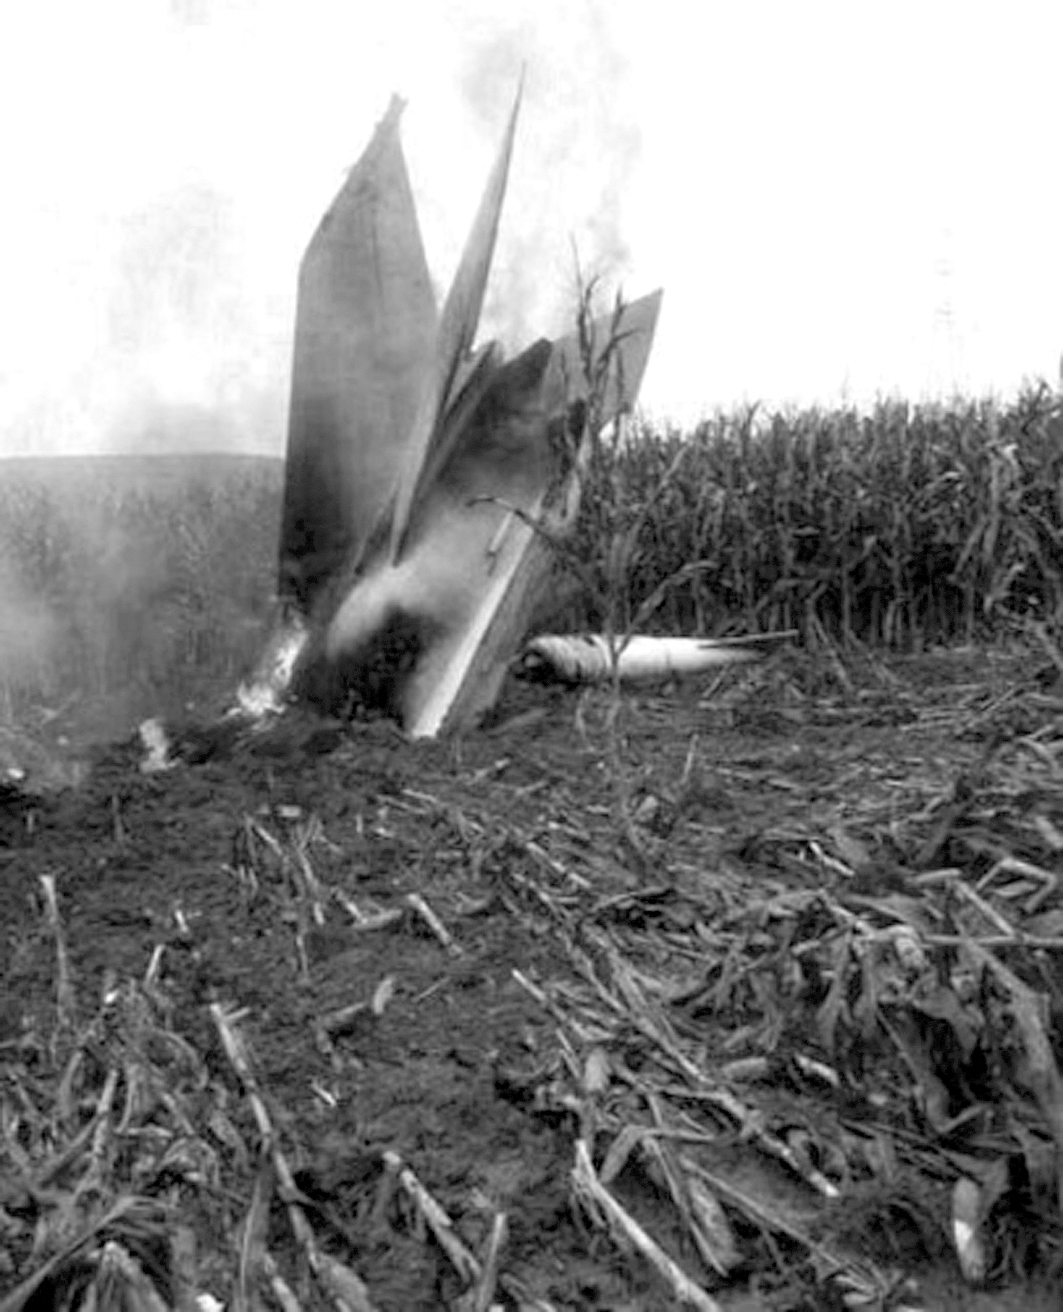 高清镜头拍摄坠毁的飞机残骸让人感到灾难的可怕